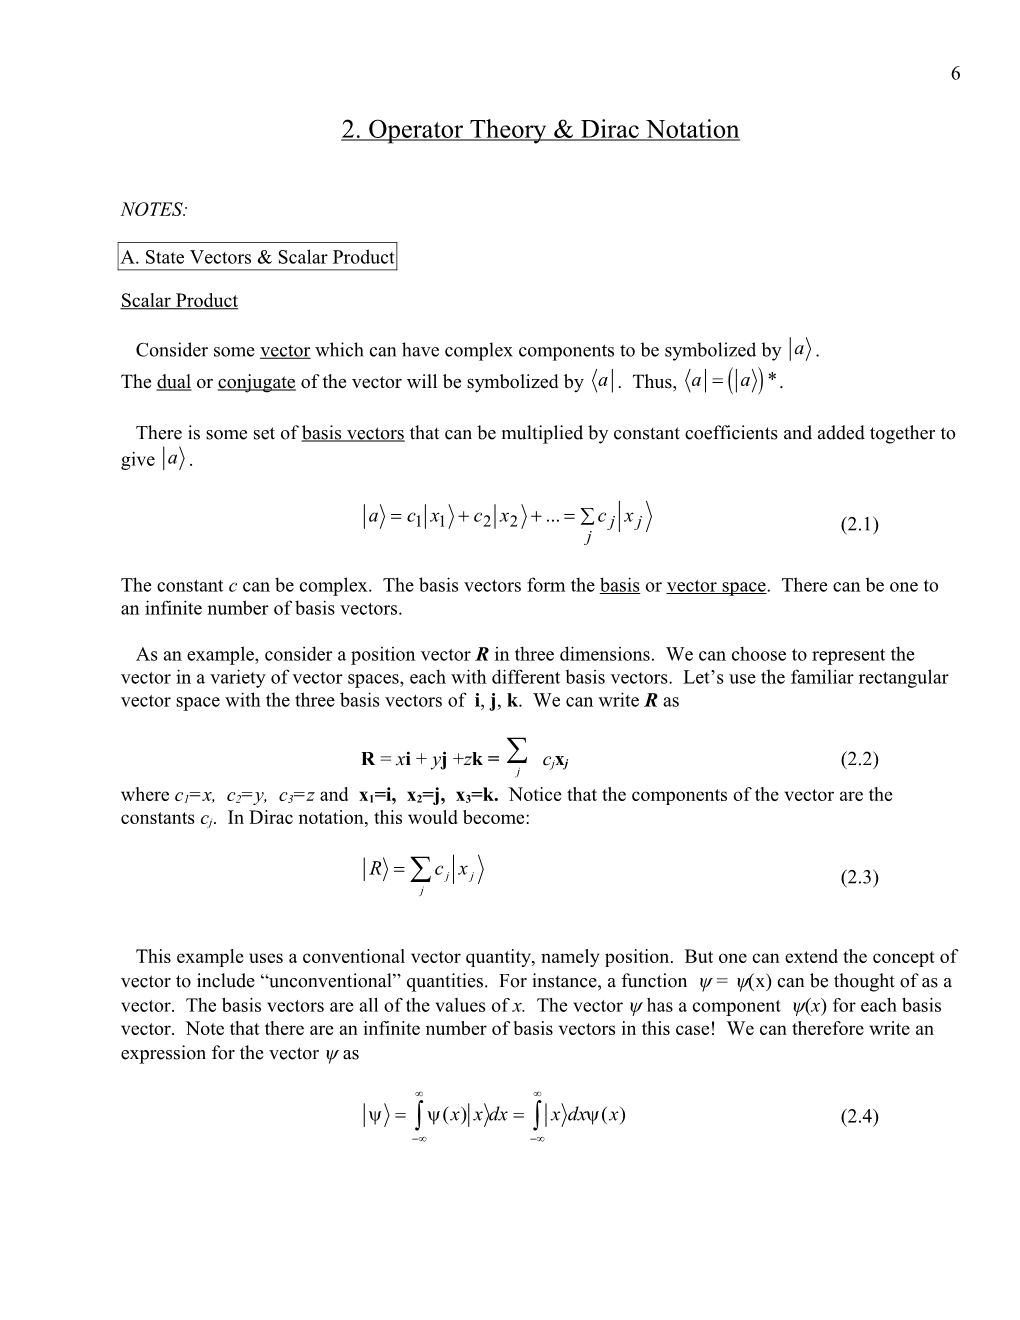 Physics 495: Quantum Mechanics & Operator Theory